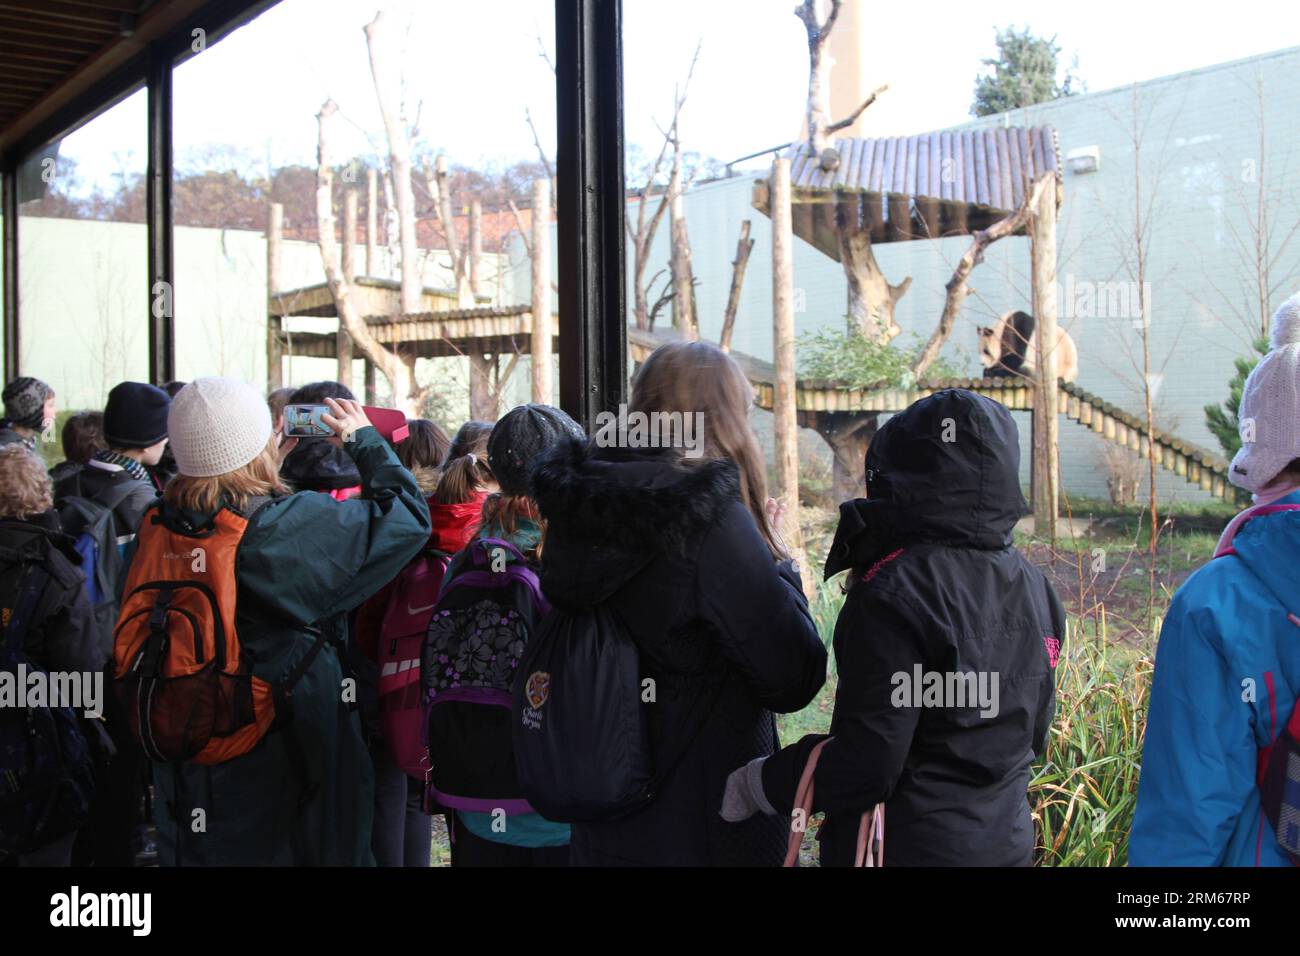 Bildnummer: 60836311 Datum: 16.12.2013 Copyright: imago/Xinhua (131216) -- EDIMBURGO, 16 dicembre 2013 (Xinhua) -- i visitatori guardano il panda gigante Yang Guang nello zoo di Edimburgo, Gran Bretagna, 16 dicembre 2013. Due panda giganti Tian Tian e Yang Guang allo zoo di Edimburgo riceveranno presto il loro milionesimo visitatore, hanno detto le autorità dello zoo lunedì, due anni dopo aver incontrato il pubblico per la prima volta. (Xinhua/Guo Chunju) BRITAIN-EDINBURGH-GIANT PANDAS PUBLICATIONxNOTxINxCHN Tiere Panda Riesenpanda xns x0x 2013 quer Foto Stock